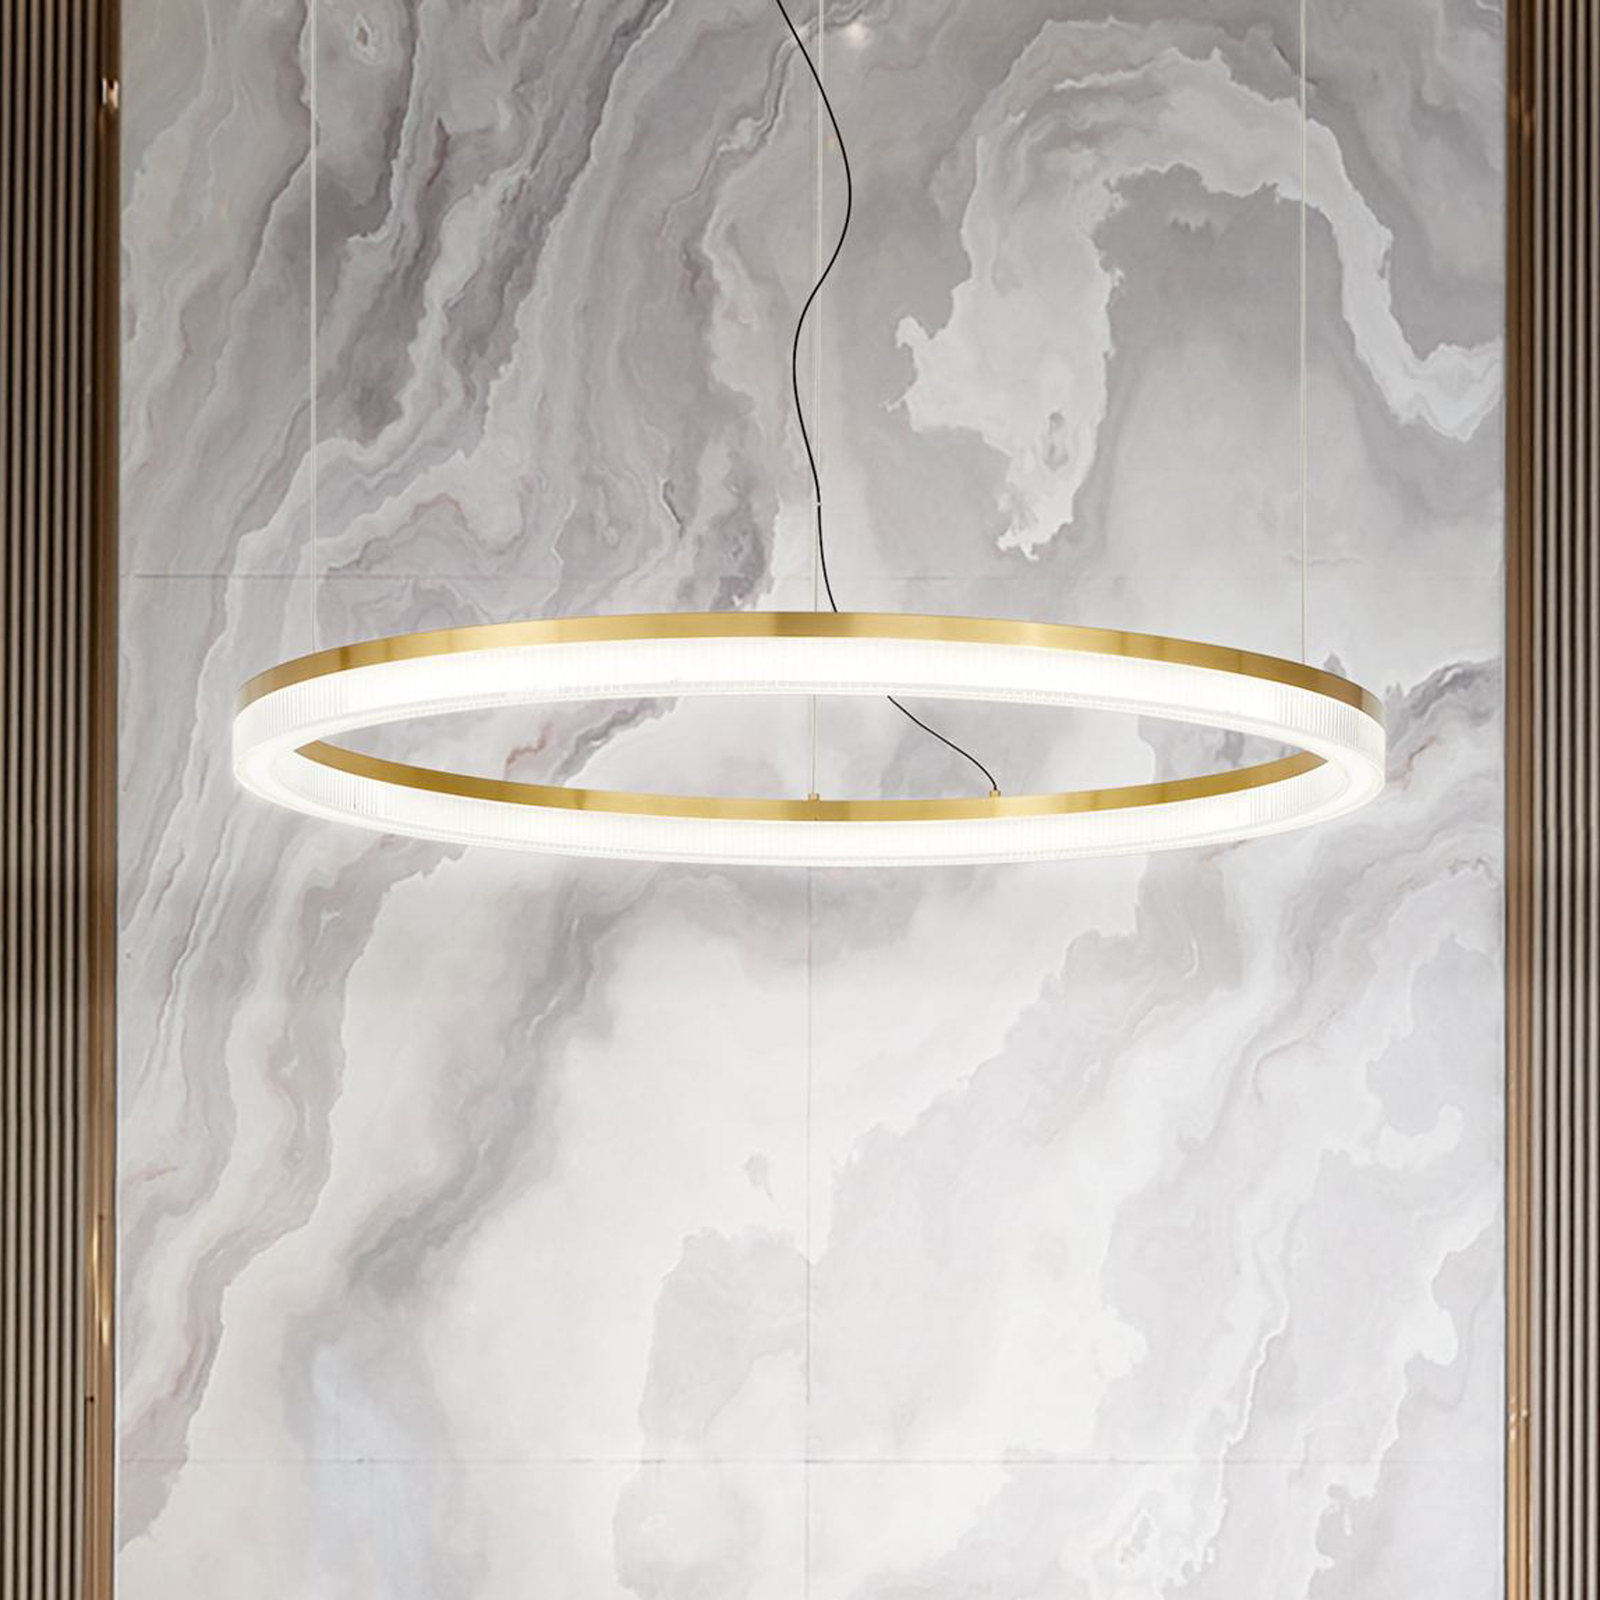 Ideal Lux LED hanglamp Kroon Ø 80 cm, messingkleurig metaal